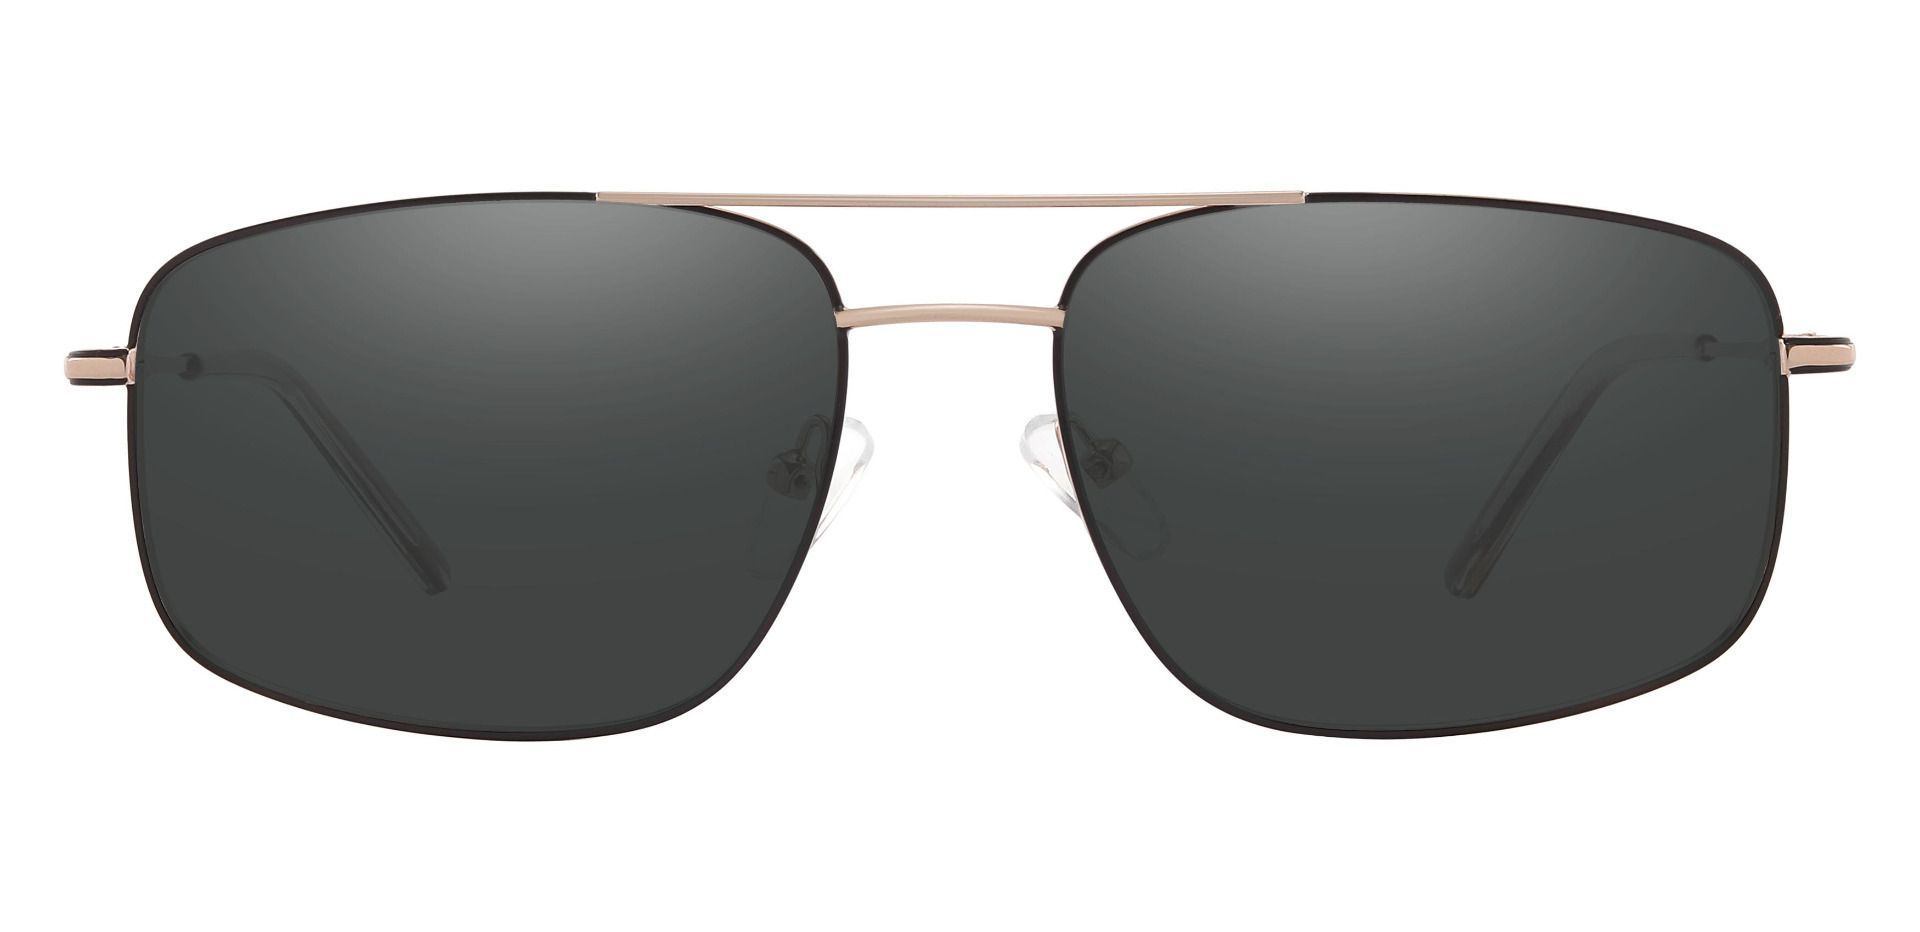 Turner Aviator Prescription Sunglasses - Gold Frame With Gray Lenses